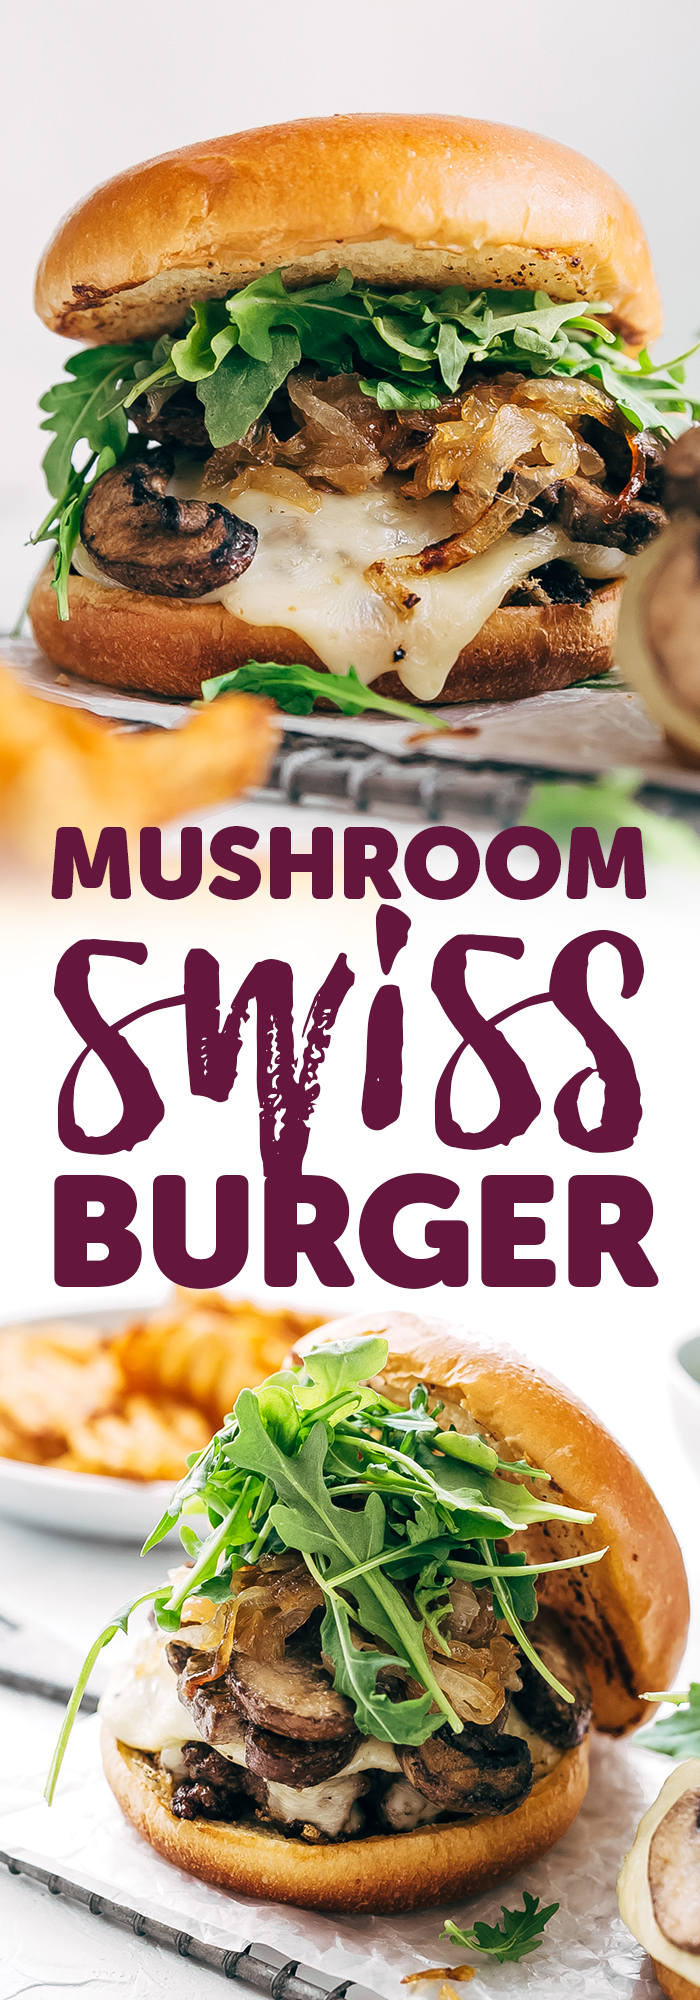 Rockin' Sweet Onion Mushroom Swiss Burgers - learn how to make the best mushroom Swiss burgers with sweet sautéed onions on top! You're really going to love these!! #mushroomburgers #mushroomswissburgers #swissmushroomburgers #burgers #grilling| LIttlespicejar.com